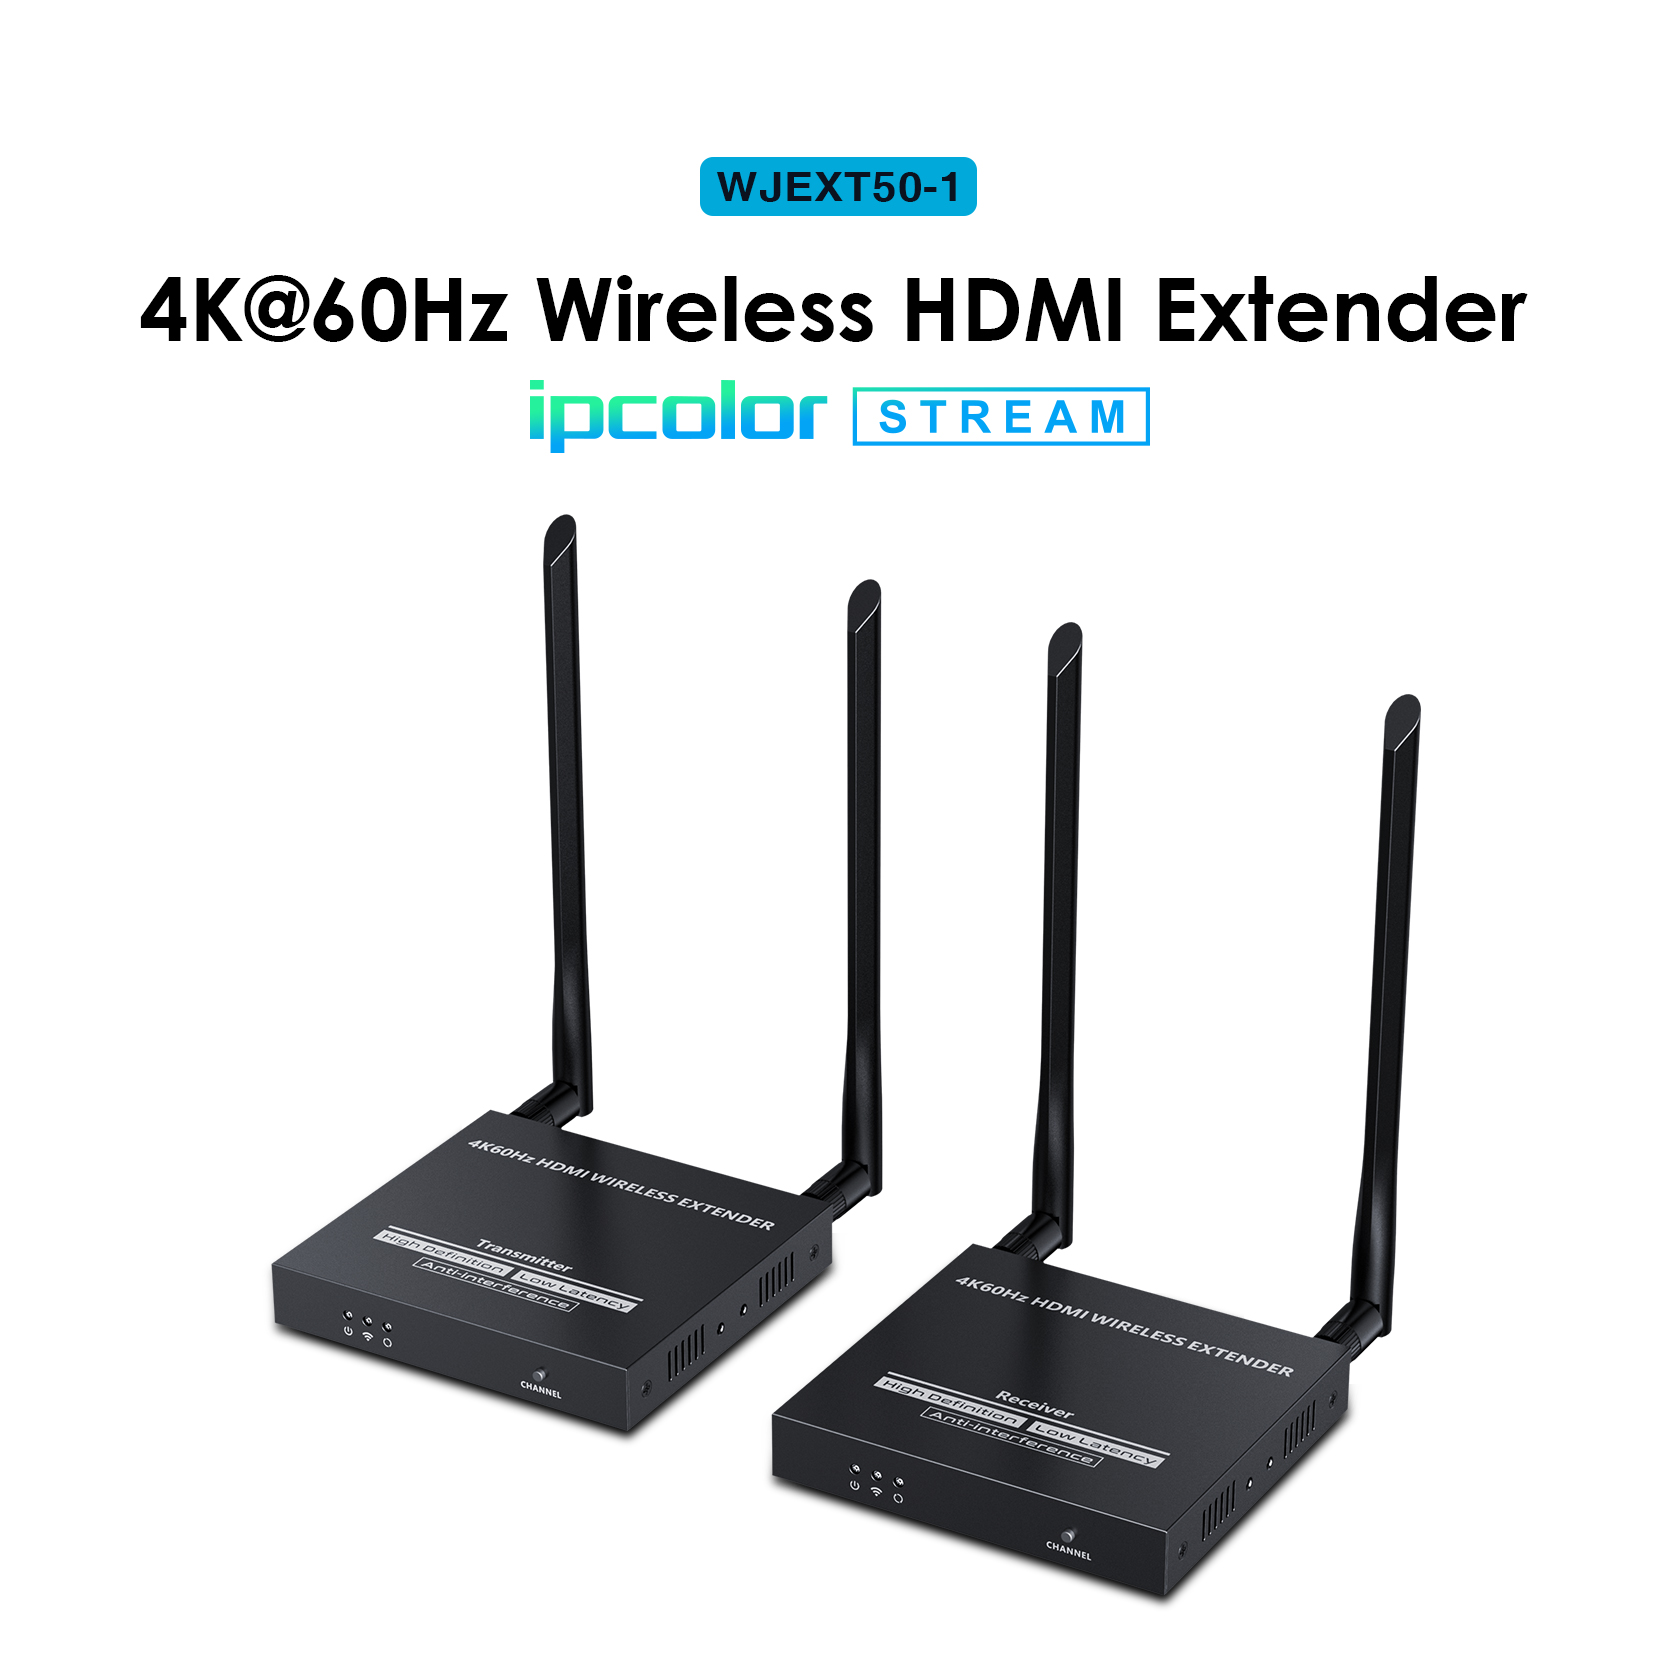 黑五特惠，史低价！weJupit 4kX60Hz HDMI 无线信号发射器接收器套装 (WJEXT50-1)，50米传输距离，抗干扰力强，轻松IR回传，内置多重保护，现仅售$249.00免运费